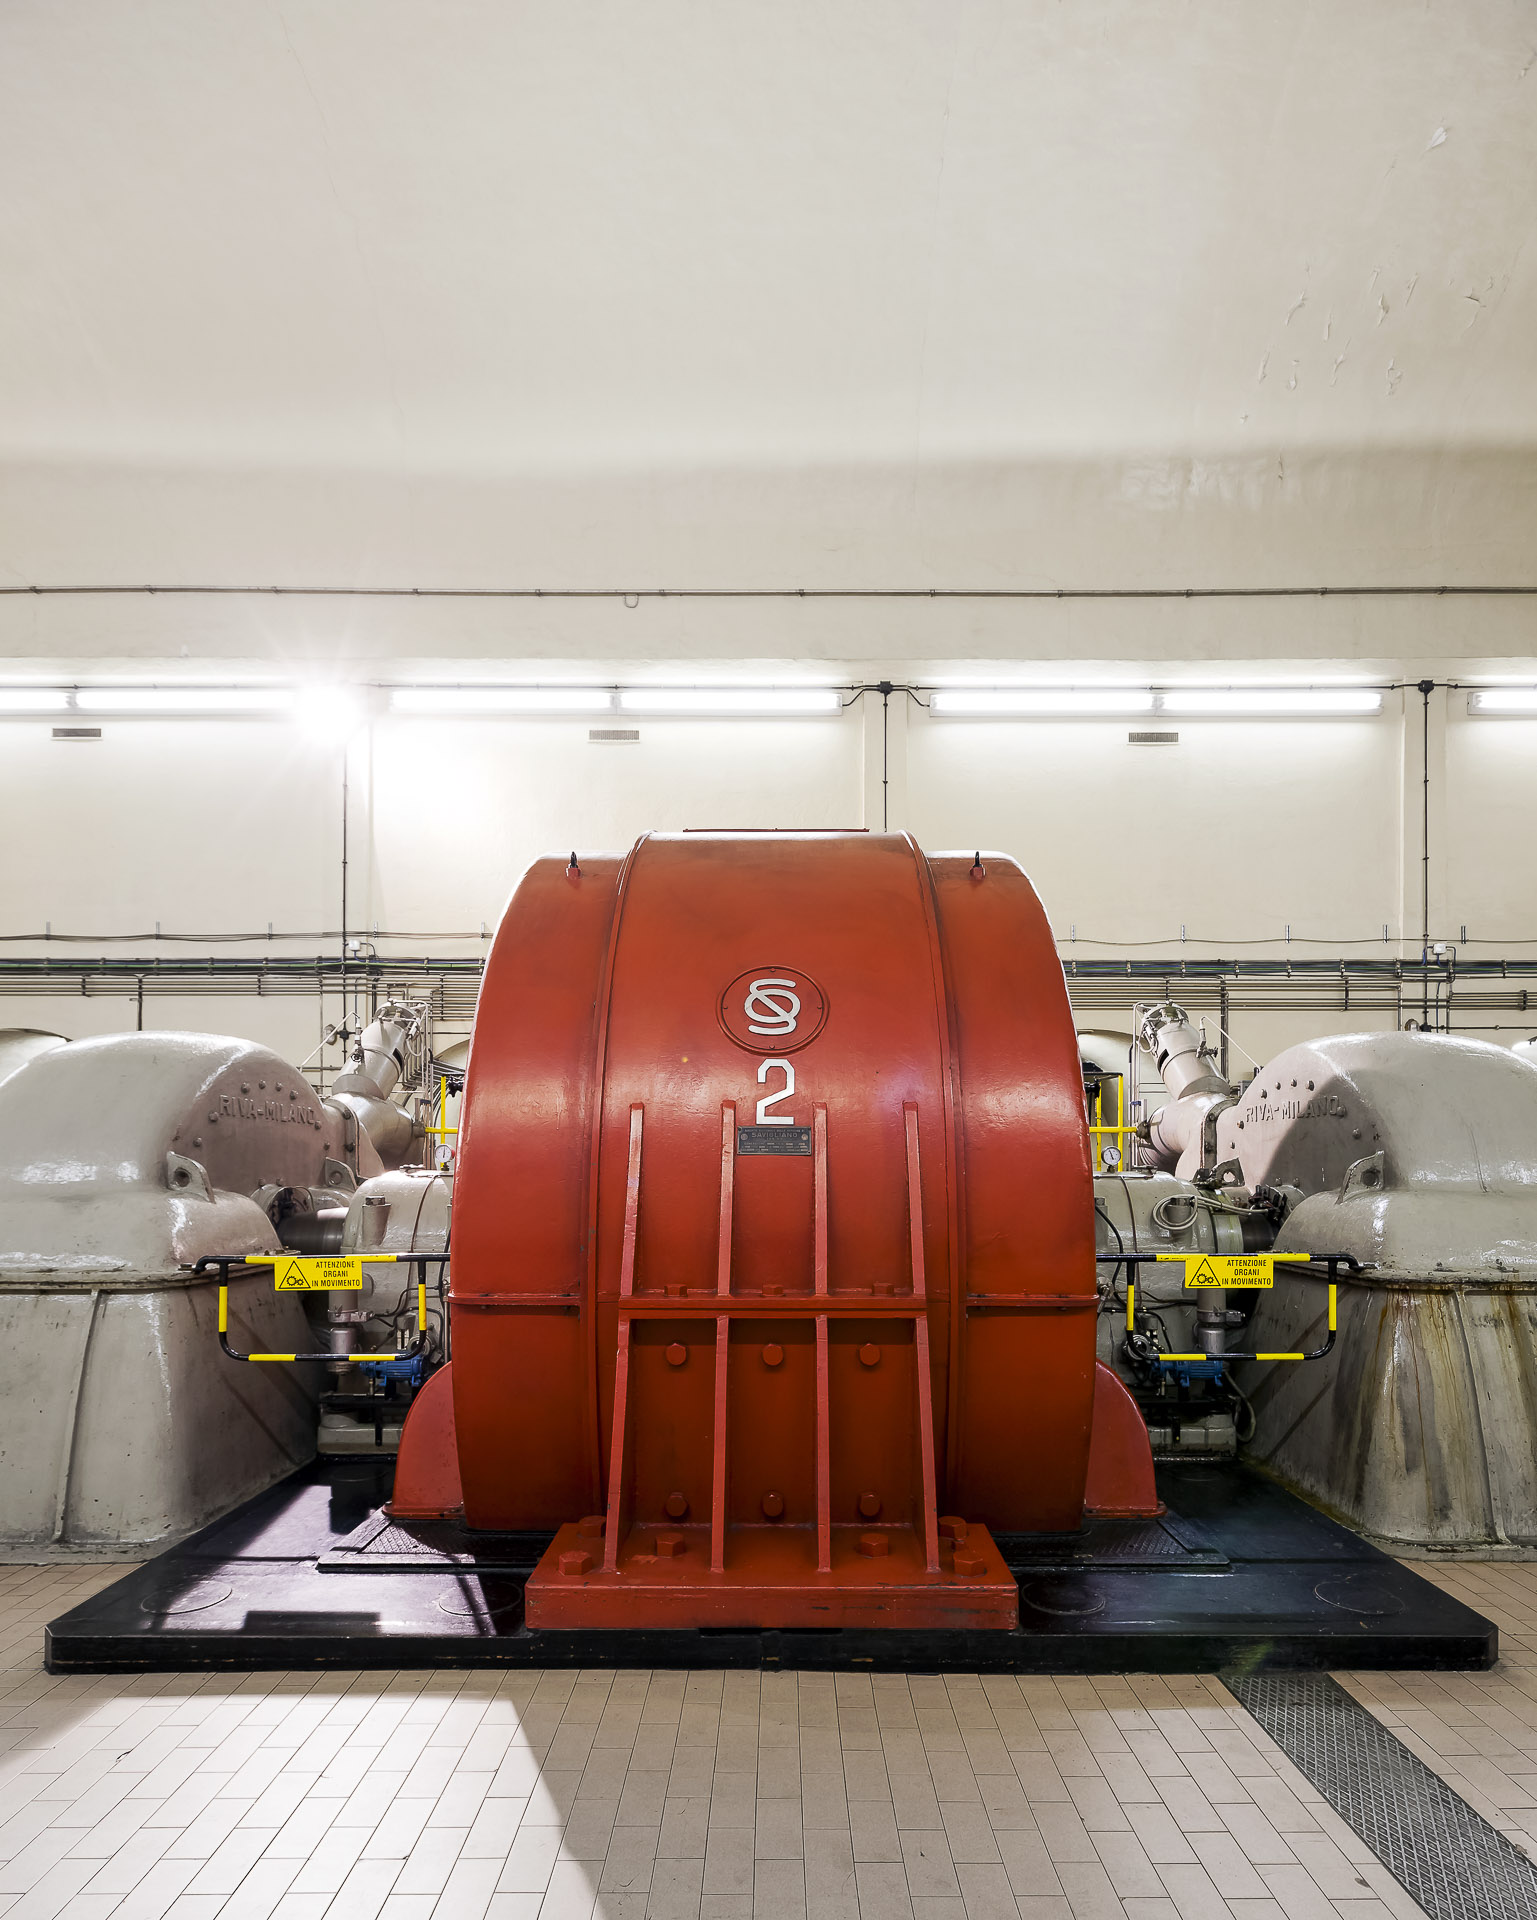 Centrale idroelettrica di Signayes produzione gruppo CVA